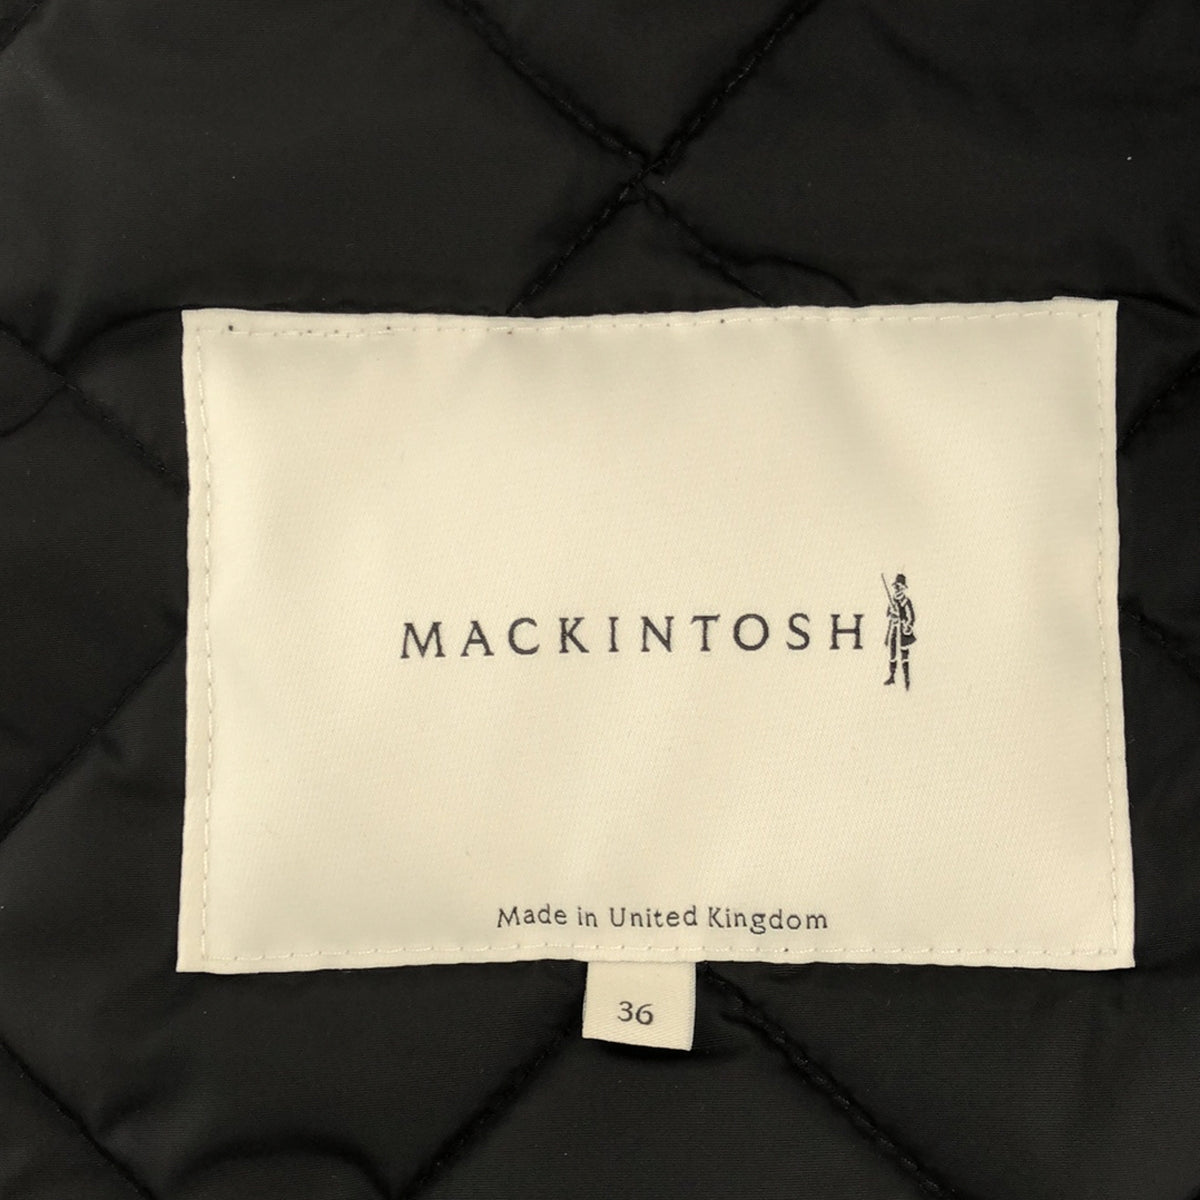 MACKINTOSH / マッキントッシュ | コーディロイ切替 キルティング ジャケット | 36 | メンズ